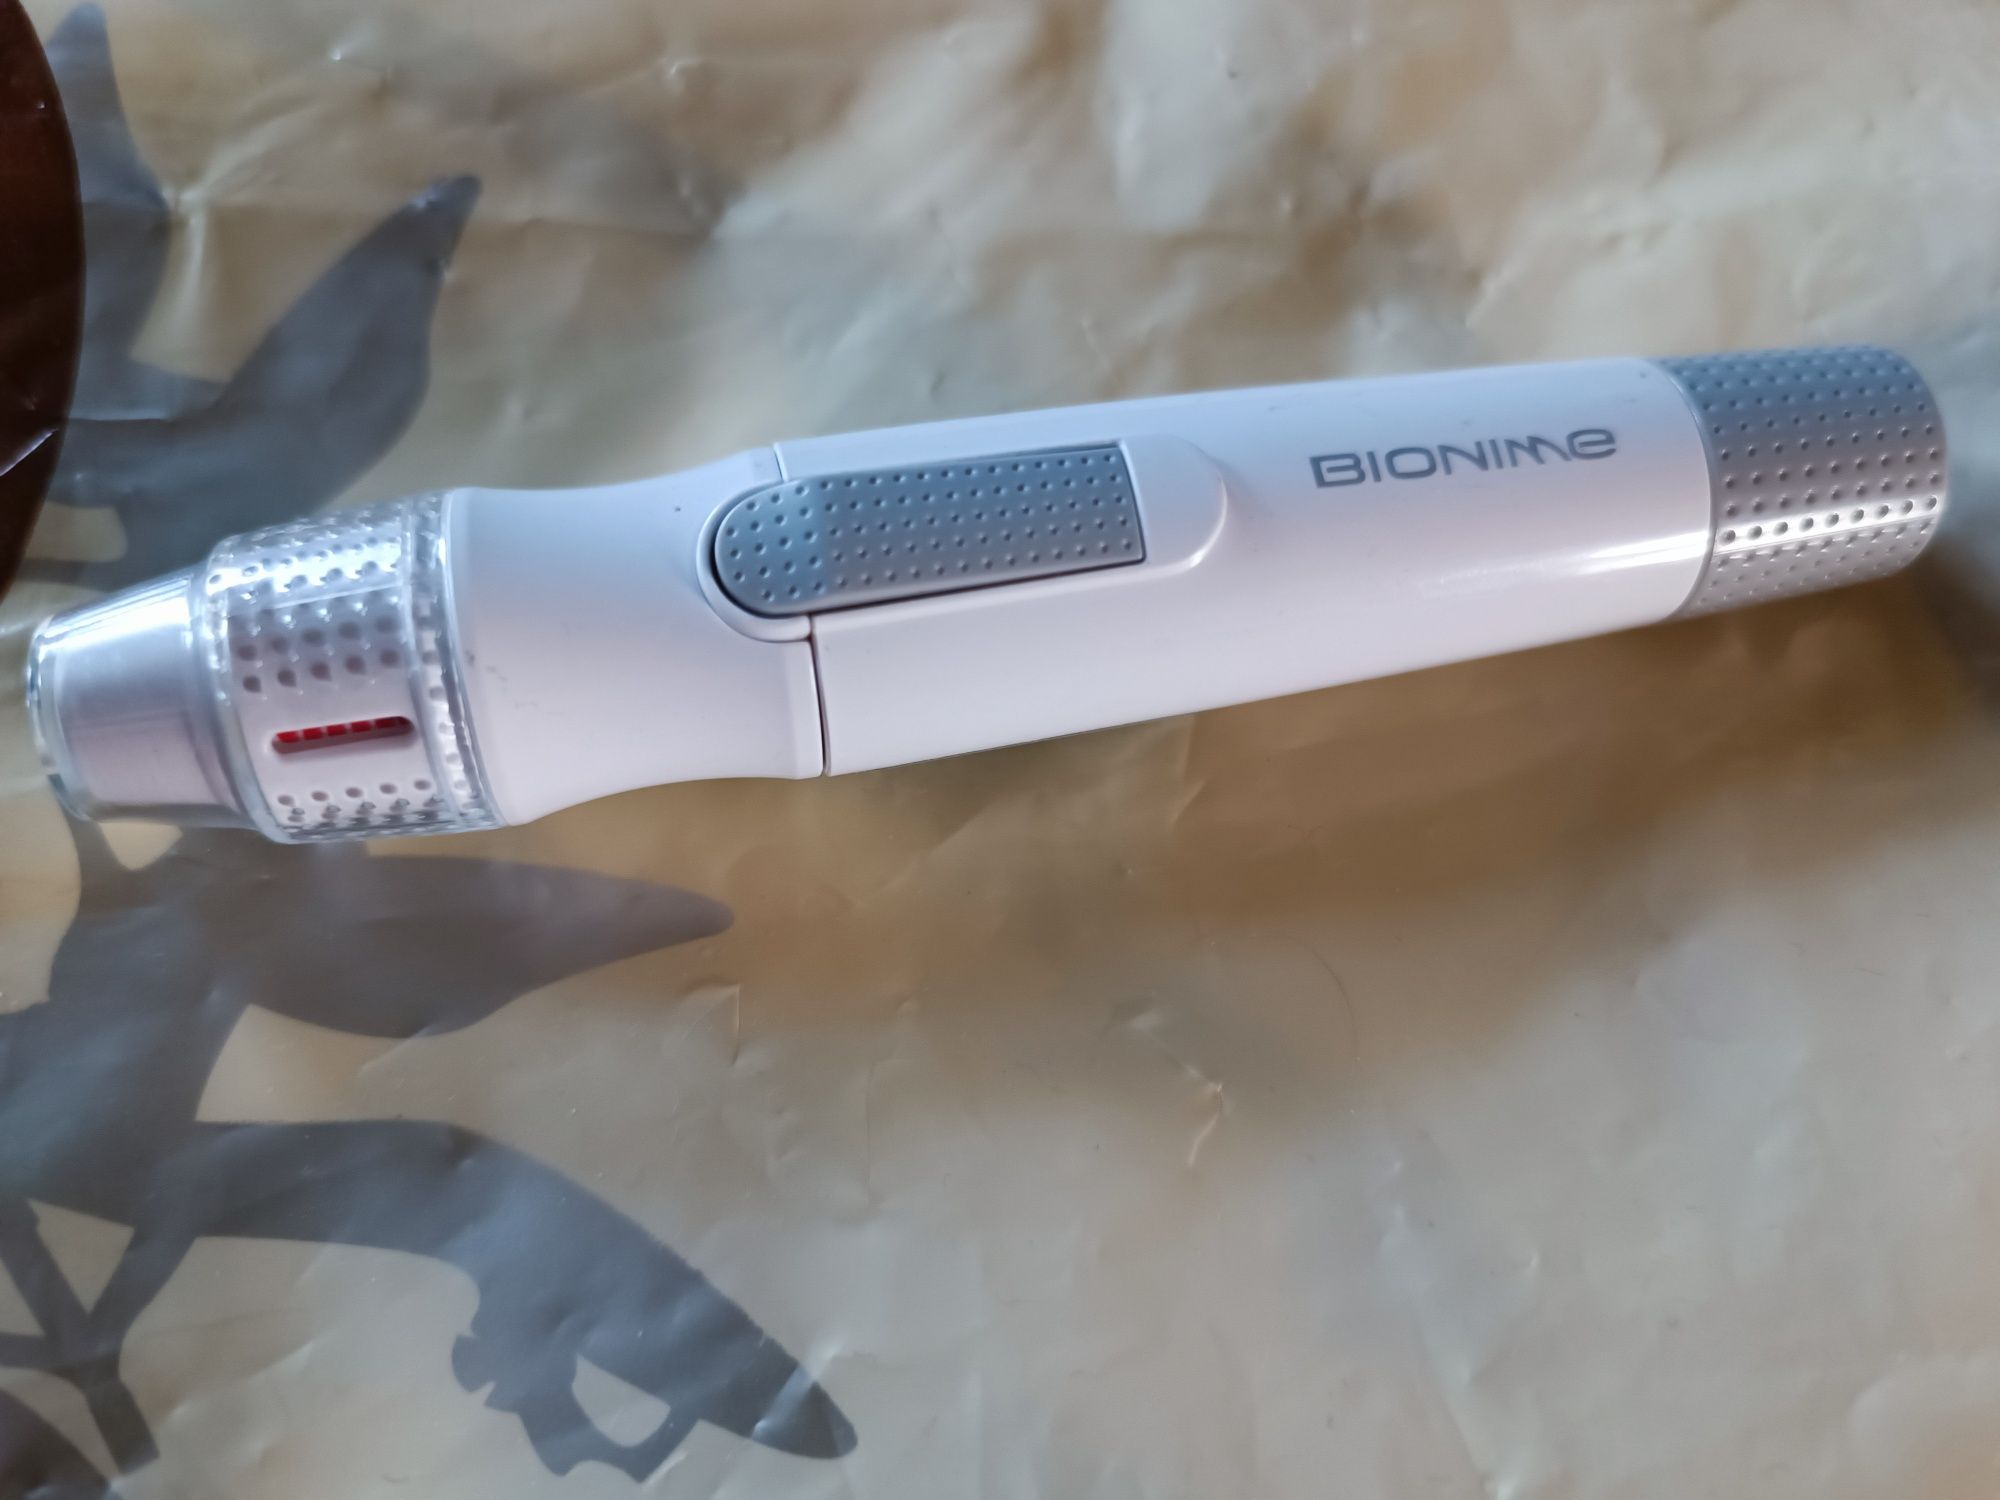 Ланцетное устройство ручка для ланцет Bionime Rightest GD 500
Днепр•
П